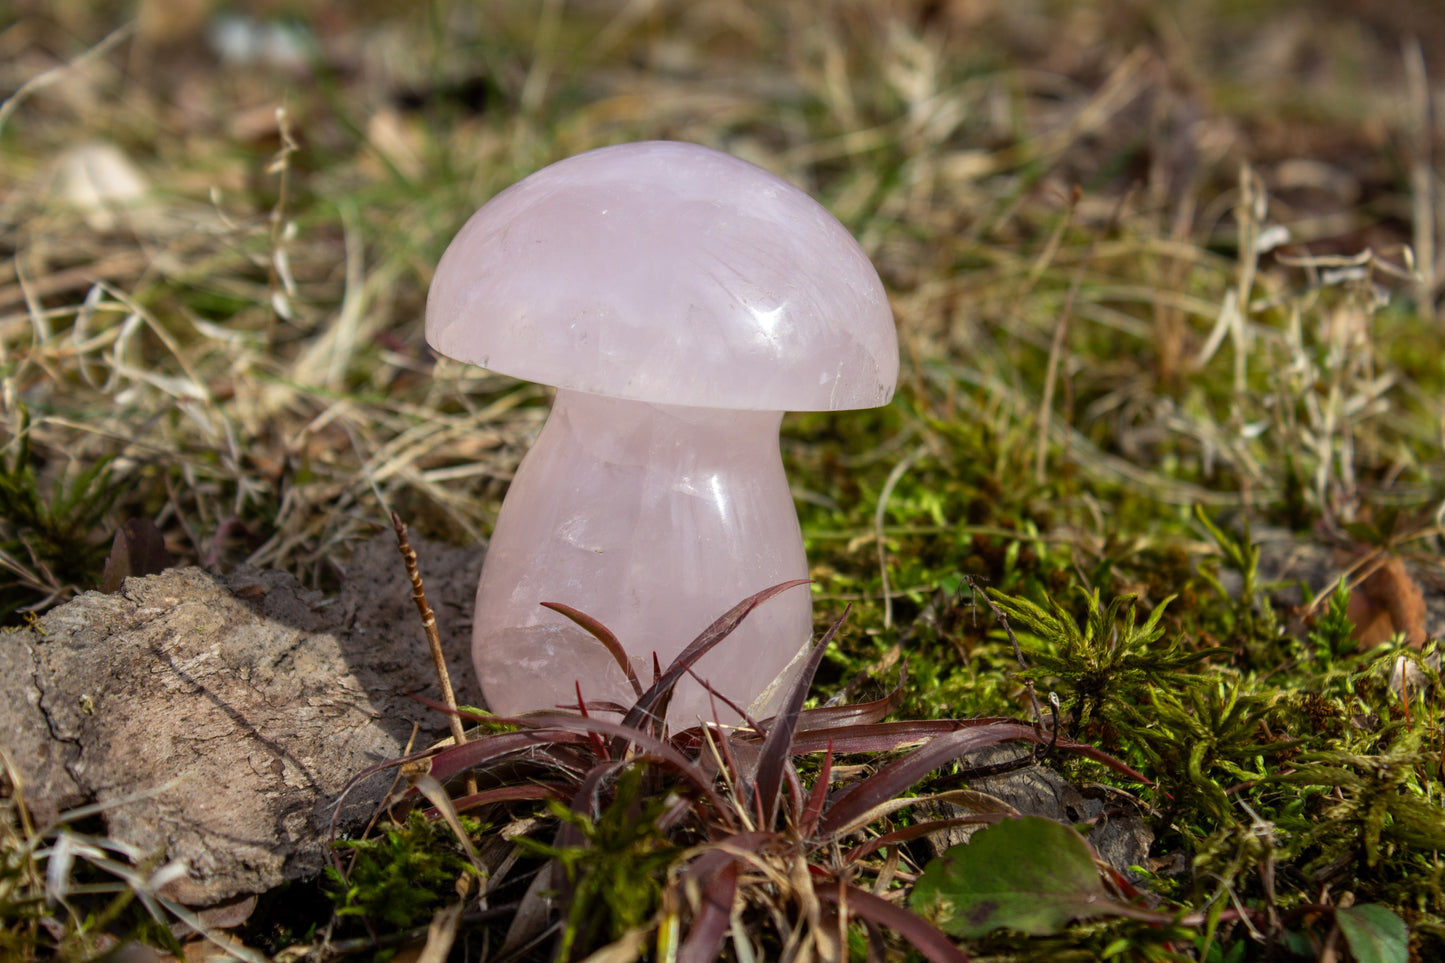 rose quartz mushroom carving polished crystal